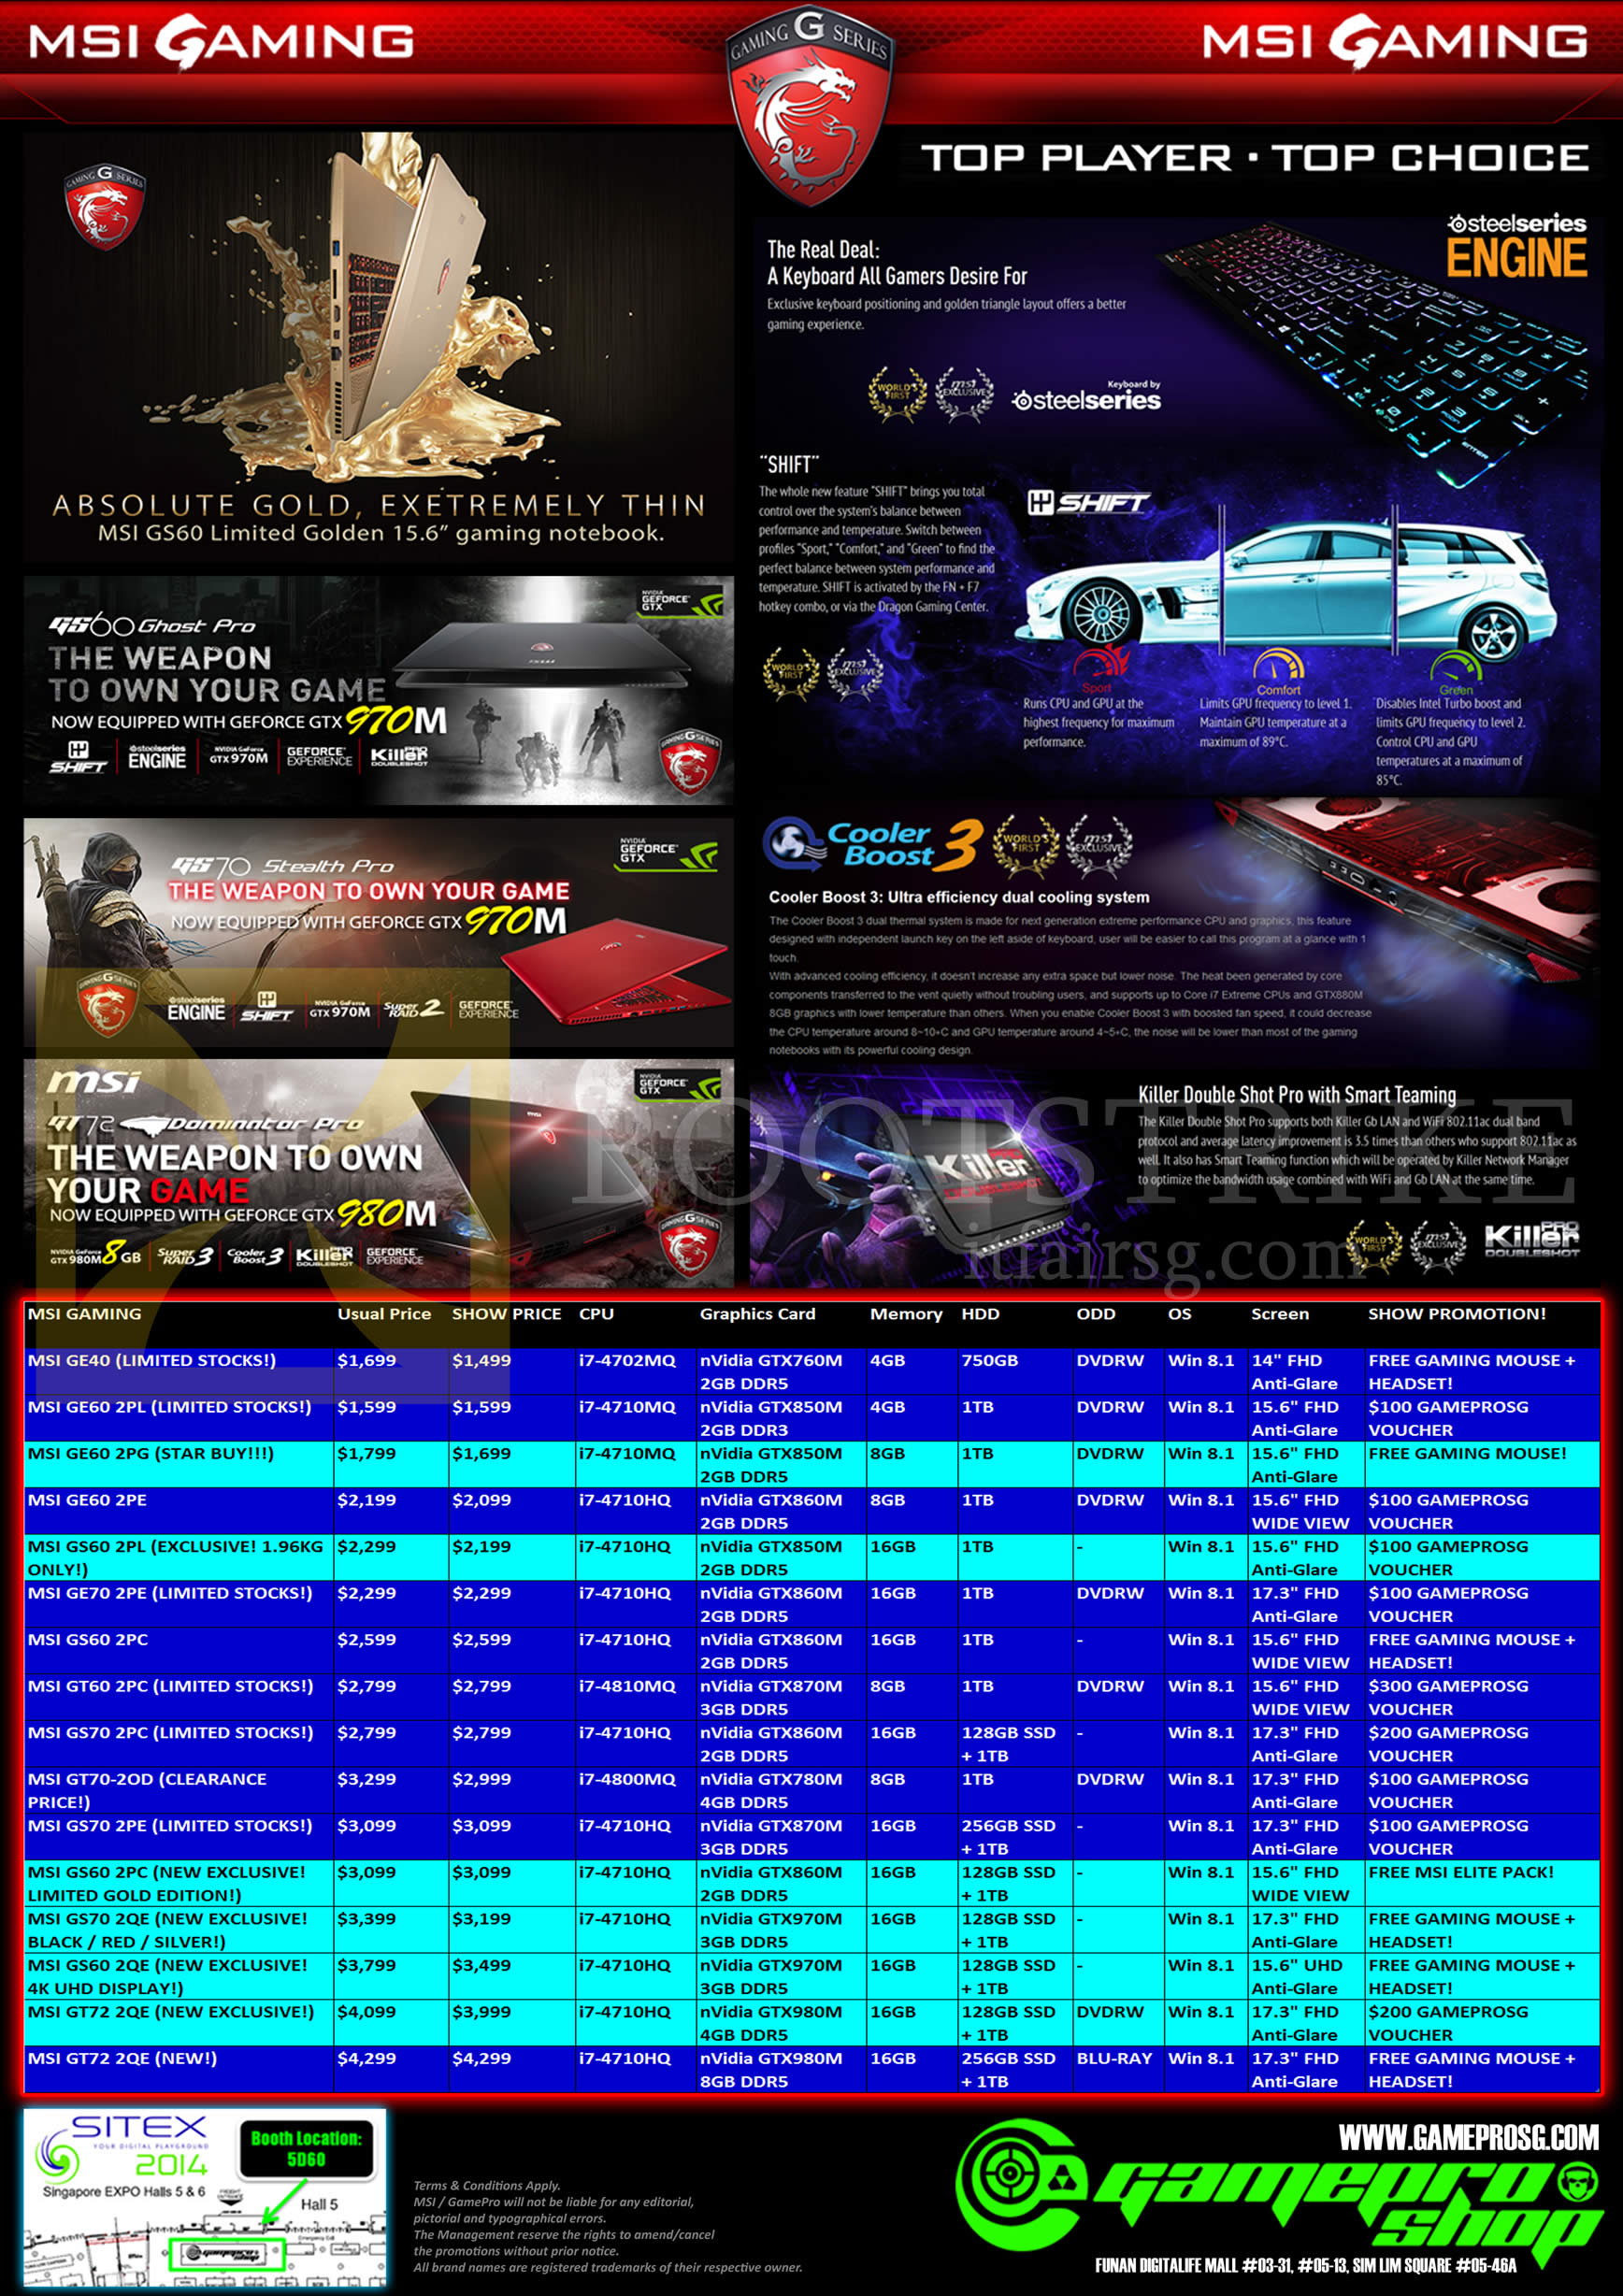 SITEX 2014 price list image brochure of Gamepro MSI Notebooks GE40 GE60 GS60 GE70 GT60 GT72